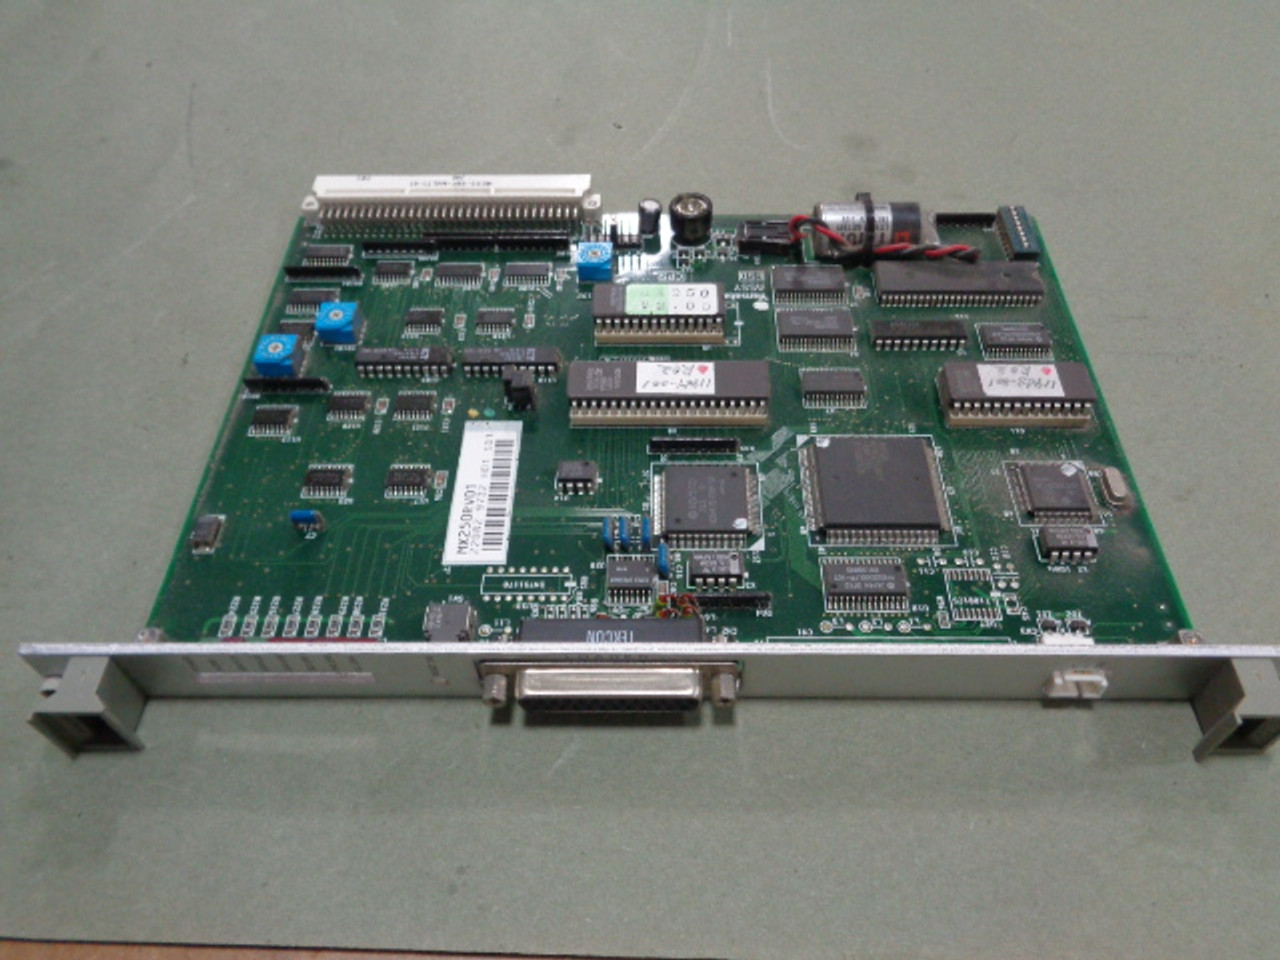 Fuji MX250RV01 / Yamatake-Honeywell 81406212-001 VME Board